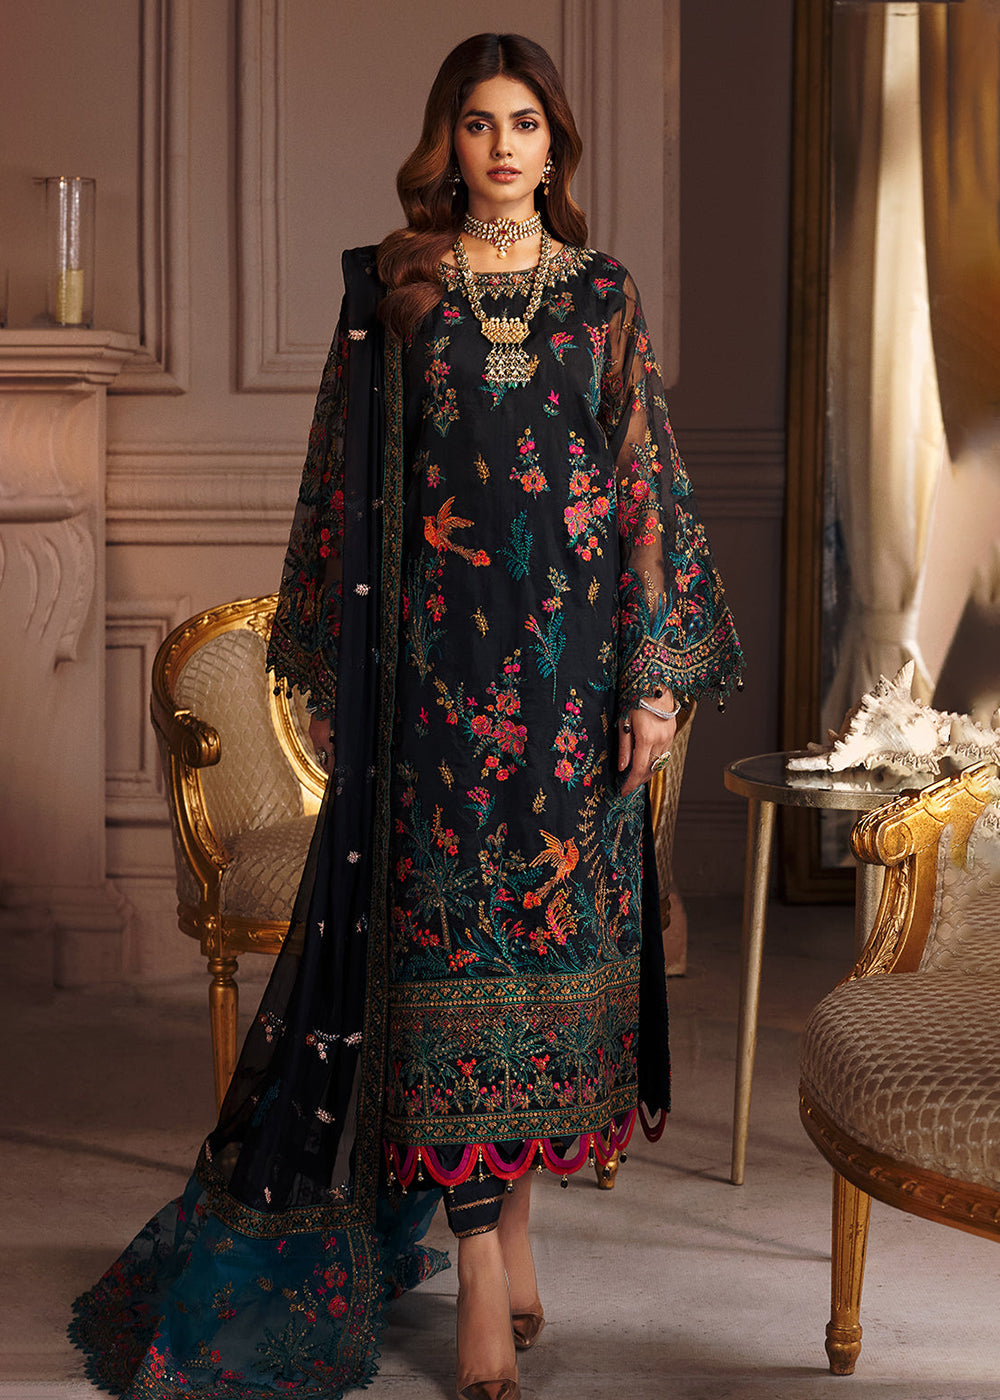 Buy Now Emaan Adeel | Elaine Wedding Formals 2023 | EL-06 Online in USA, UK, Canada & Worldwide at Empress Clothing.